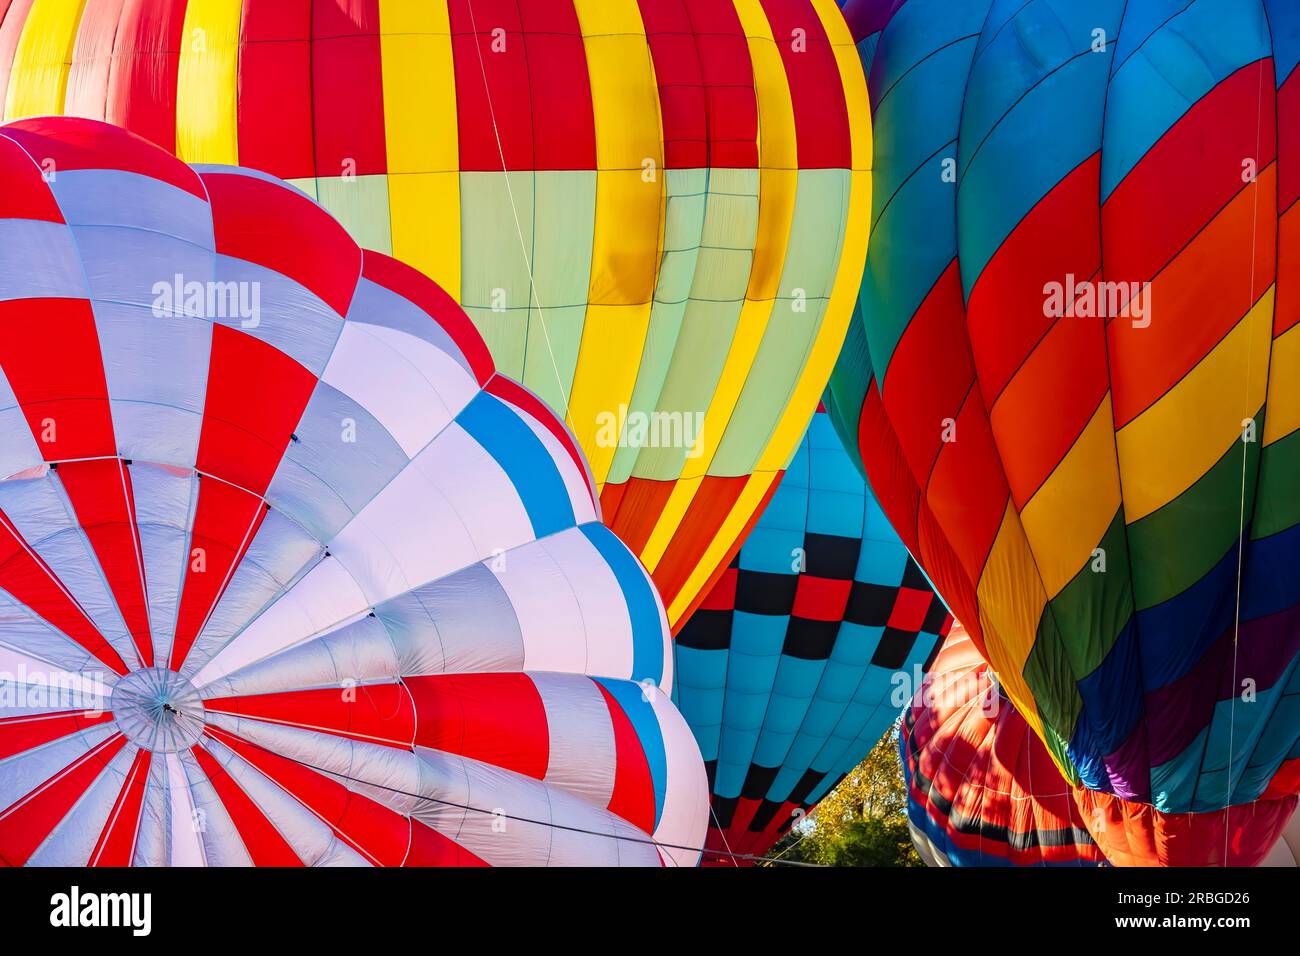 Miles disfrutan del desfile de globos gigantes en NY - Los Angeles